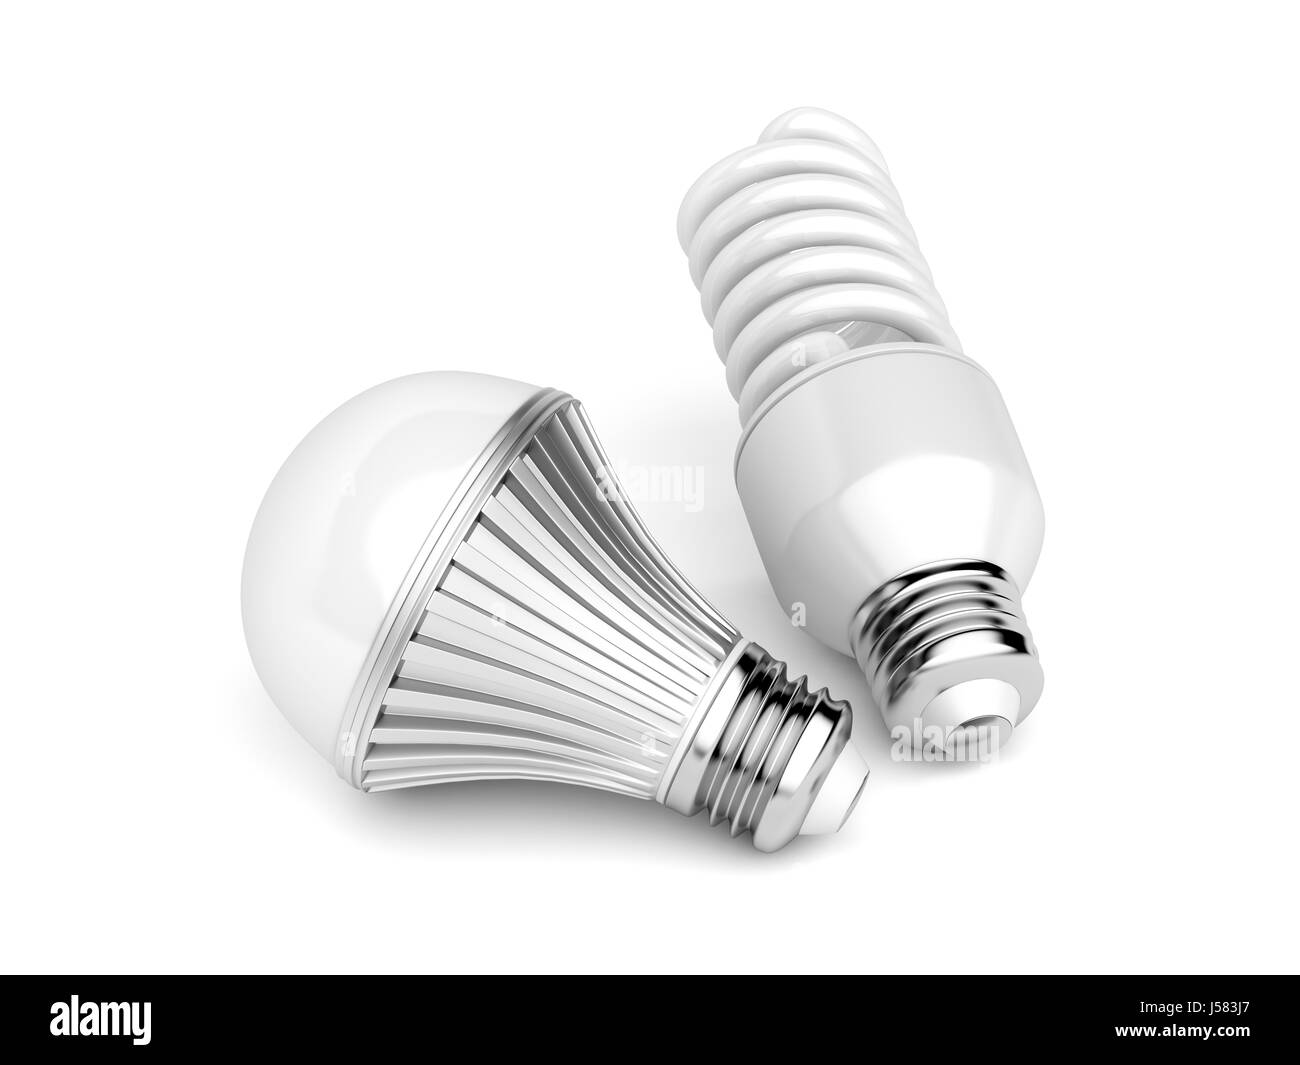 Ampoules CFL et LED sur fond blanc Banque D'Images